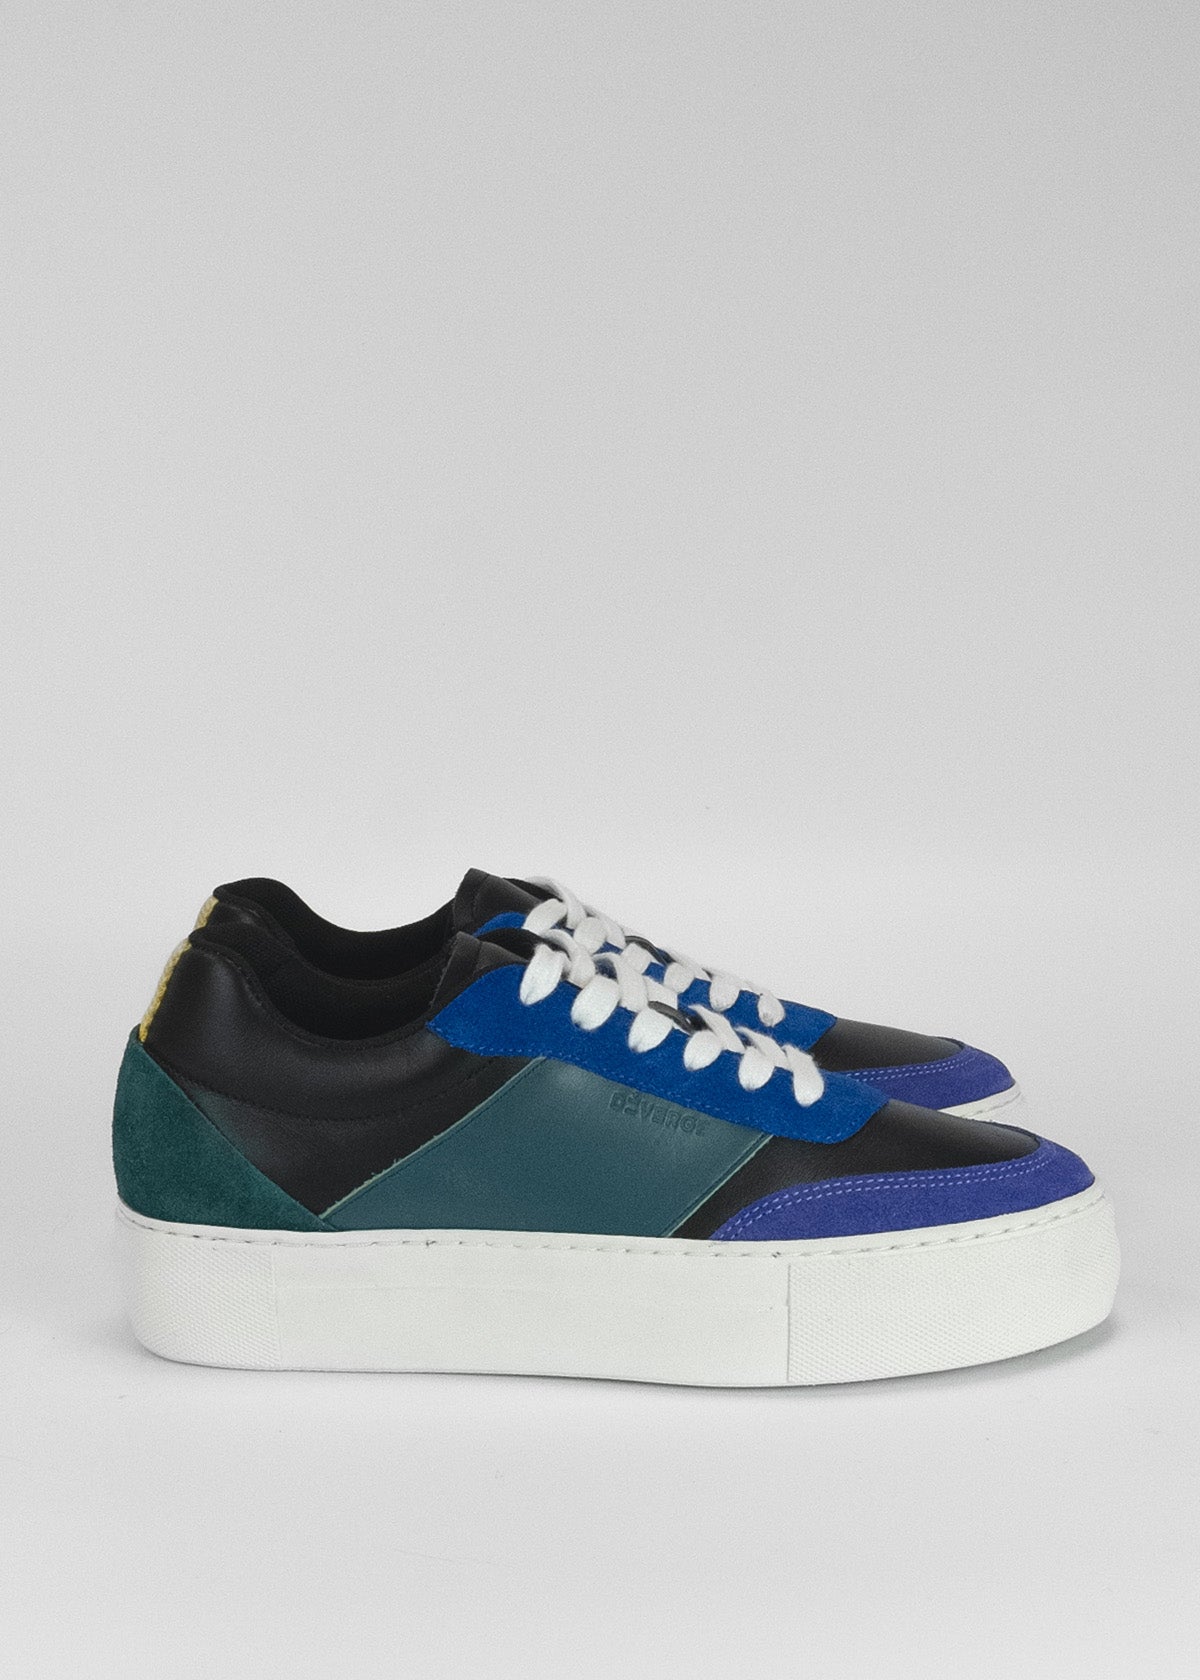 Un par de elegantes sneakers de cuero con paneles en azul eléctrico, negro y blanco.